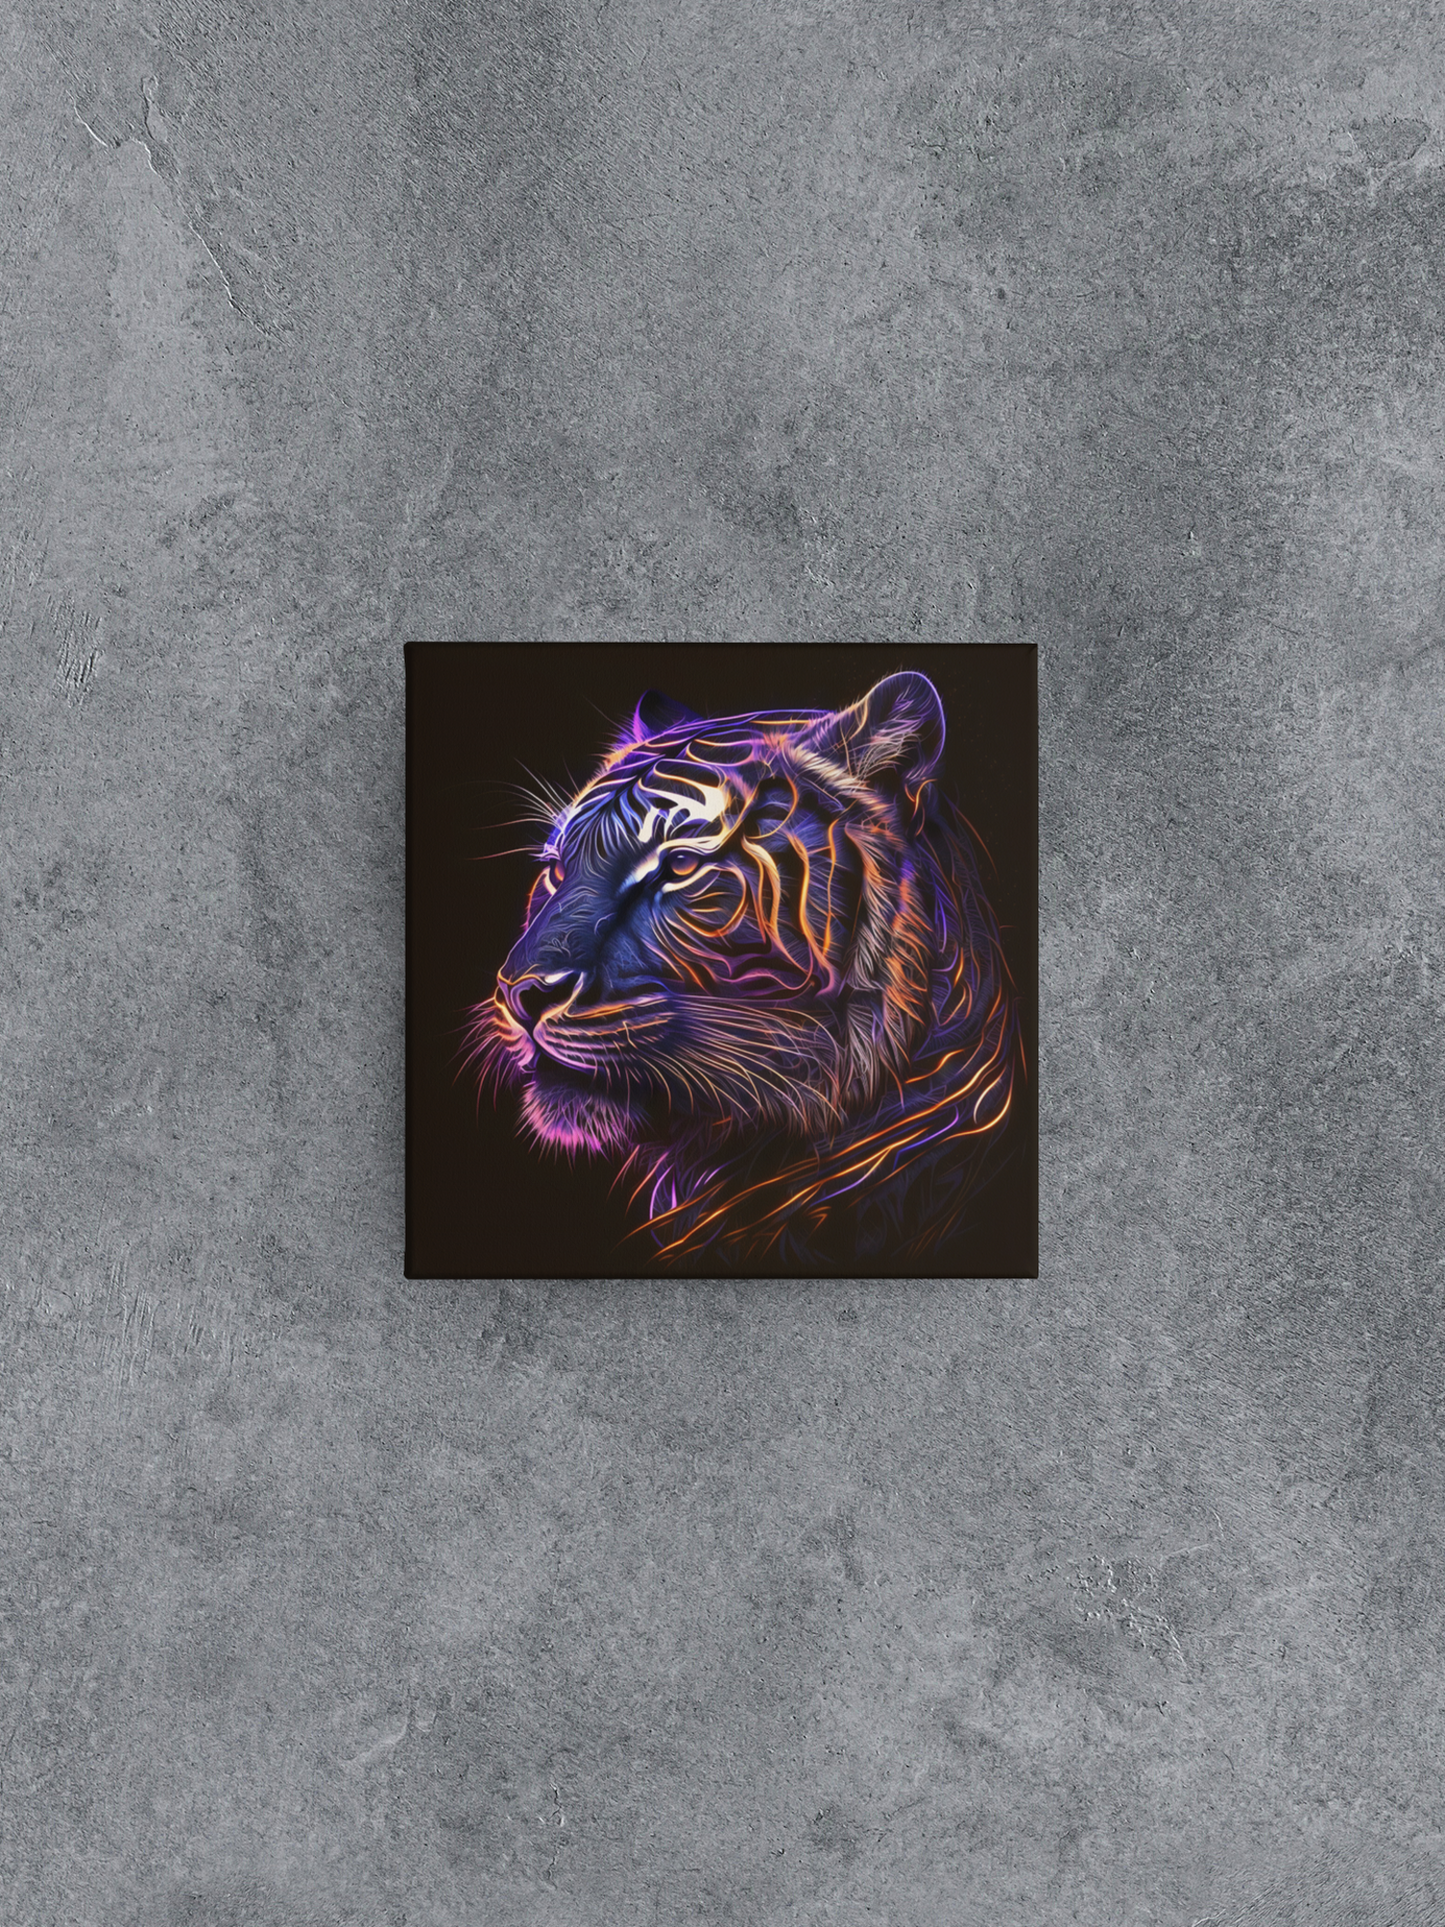 Schwarzlicht-Tiger-Leinwand-Wandkunst, Neon-Tiger-Leinwand-Malerei, leuchtende Tiger-Malerei auf schwarzem Hintergrund, bunte Tiger-Leinwand